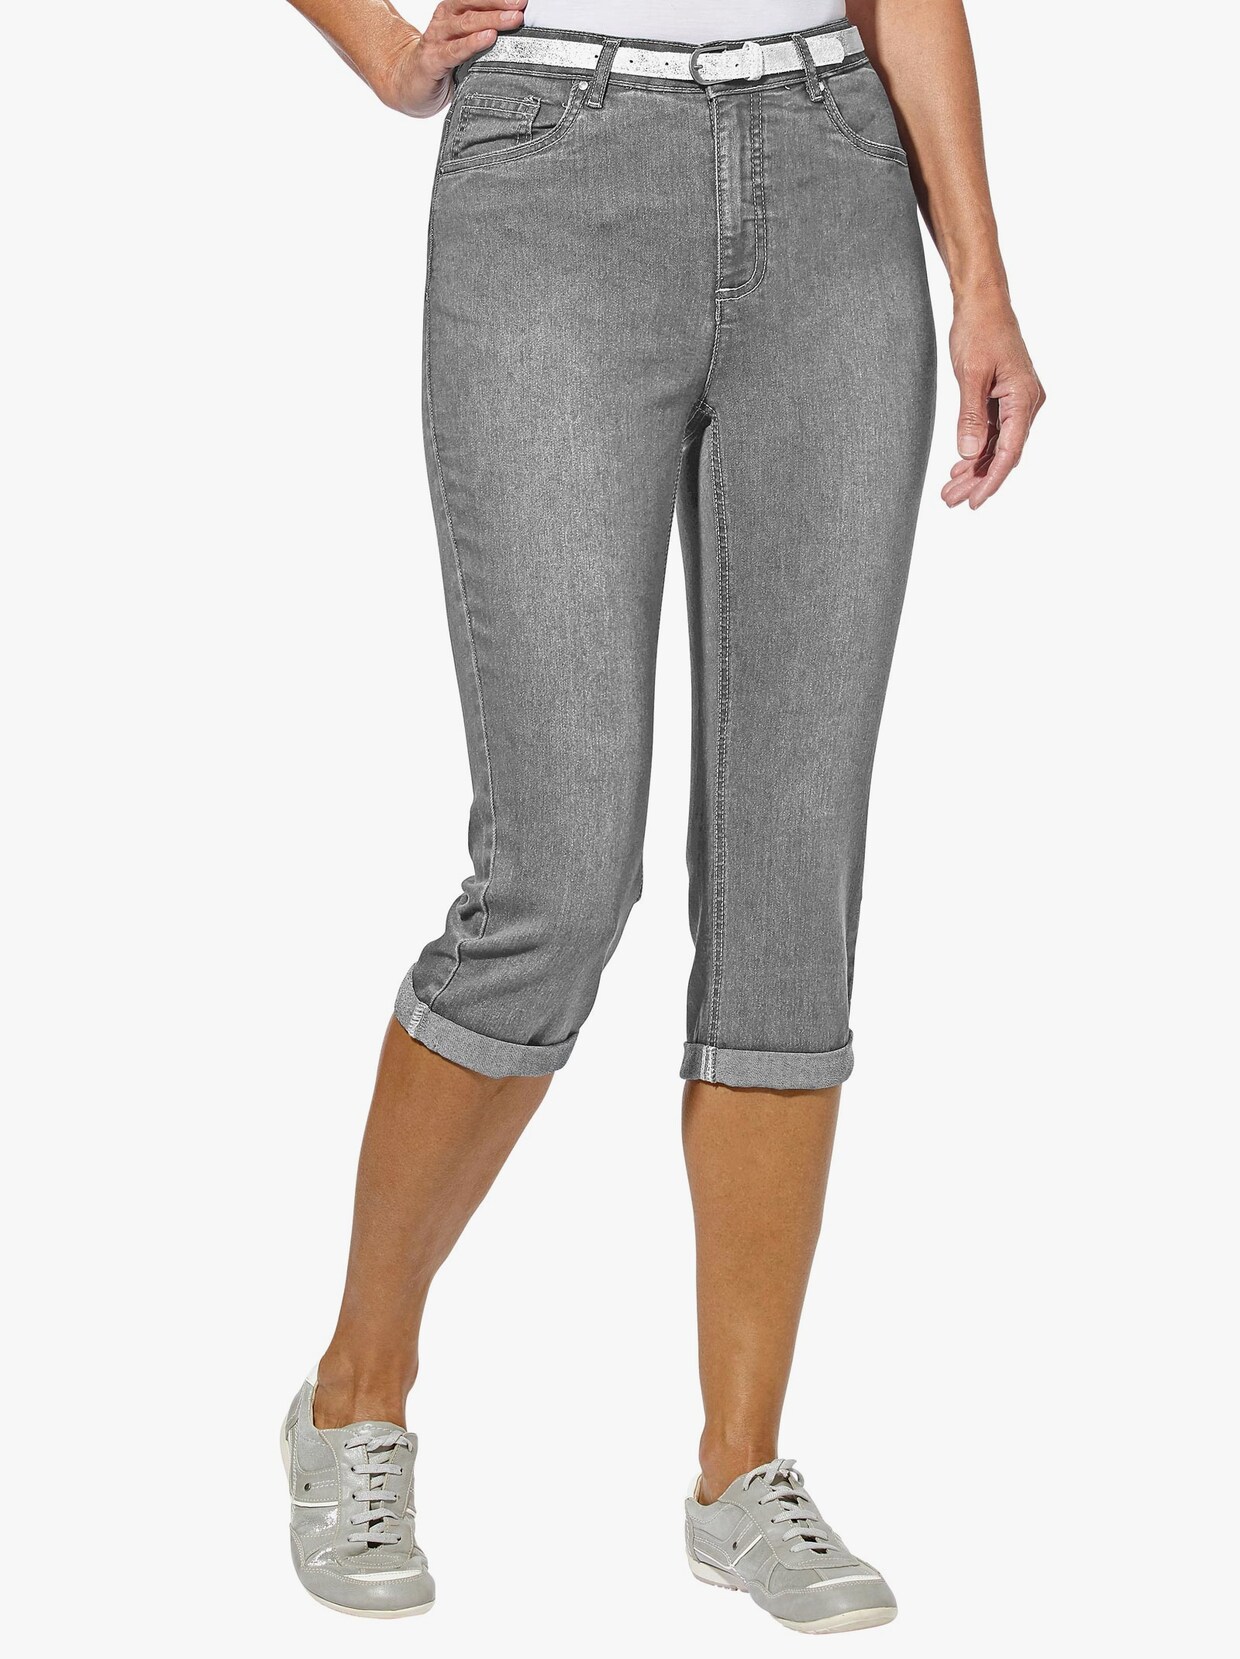 Capri nohavice - Sivá džínsovina